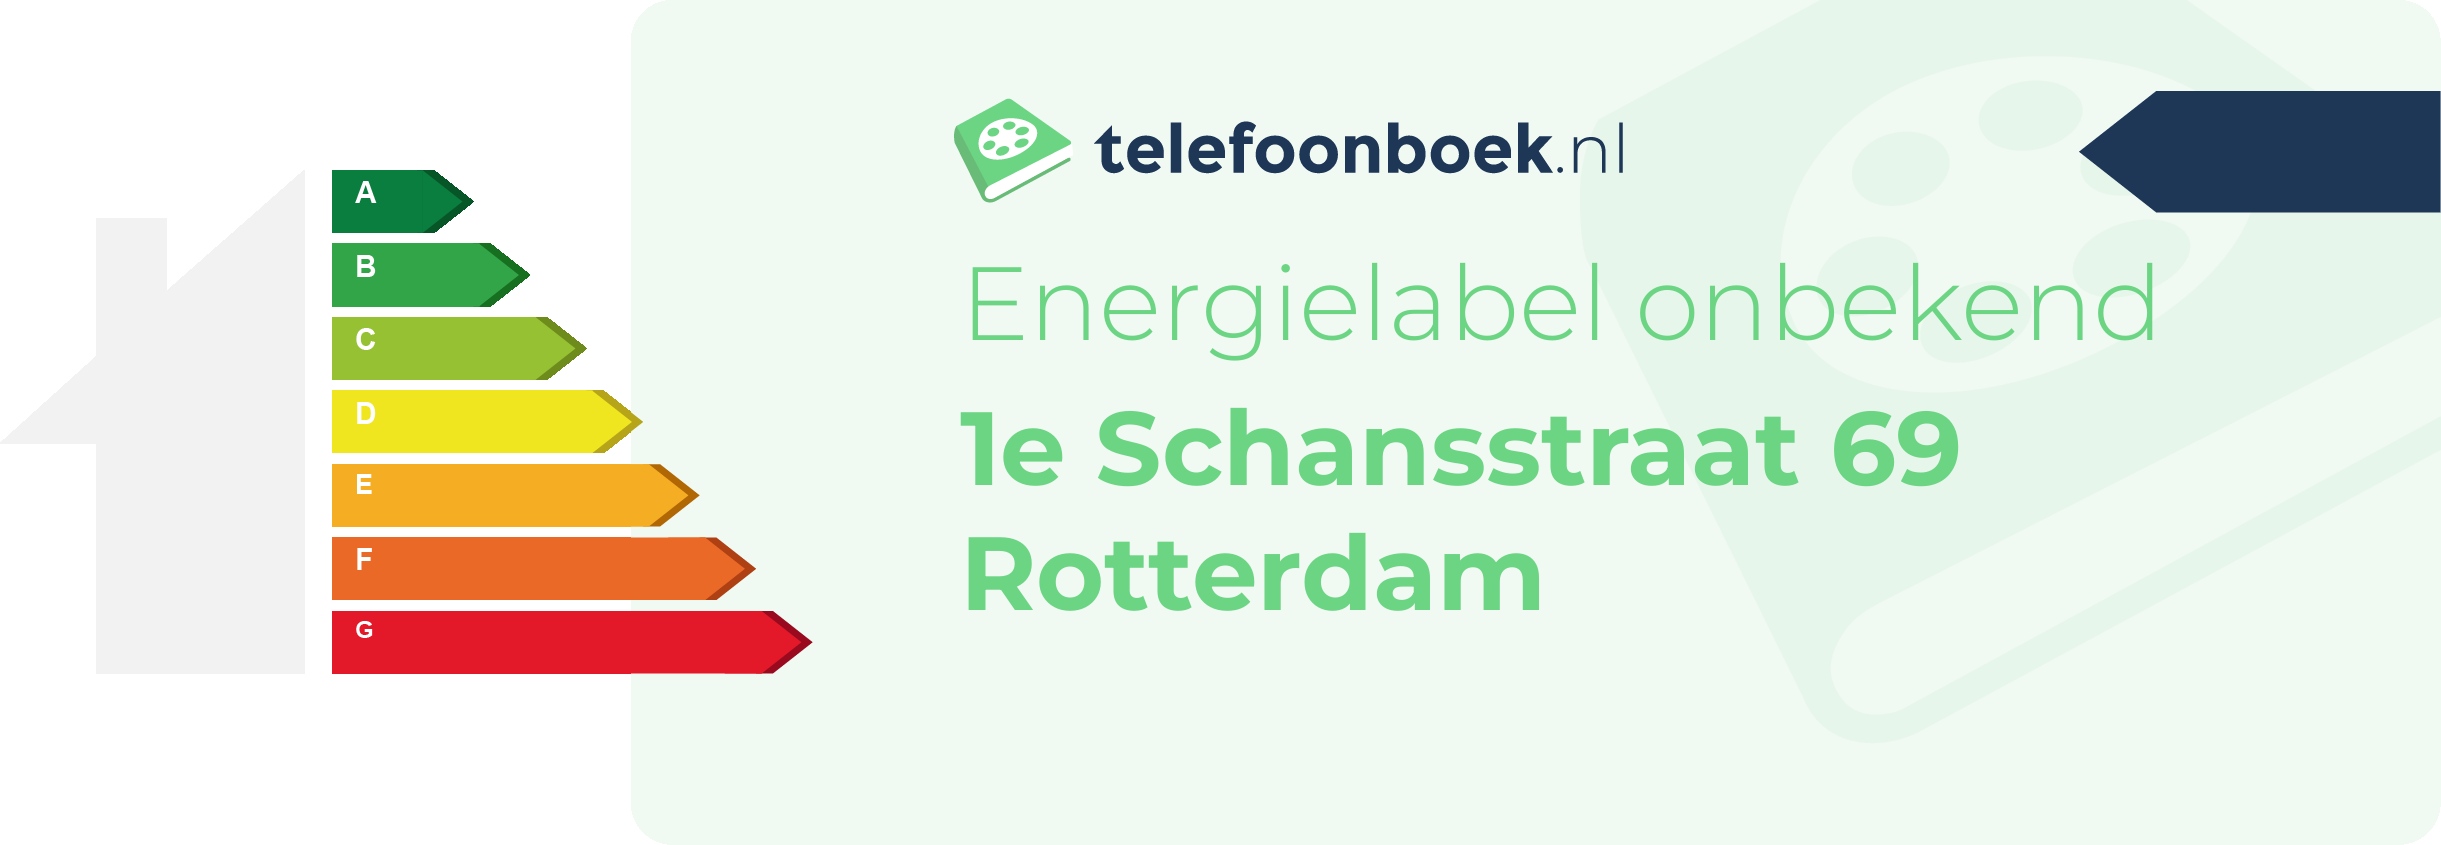 Energielabel 1e Schansstraat 69 Rotterdam